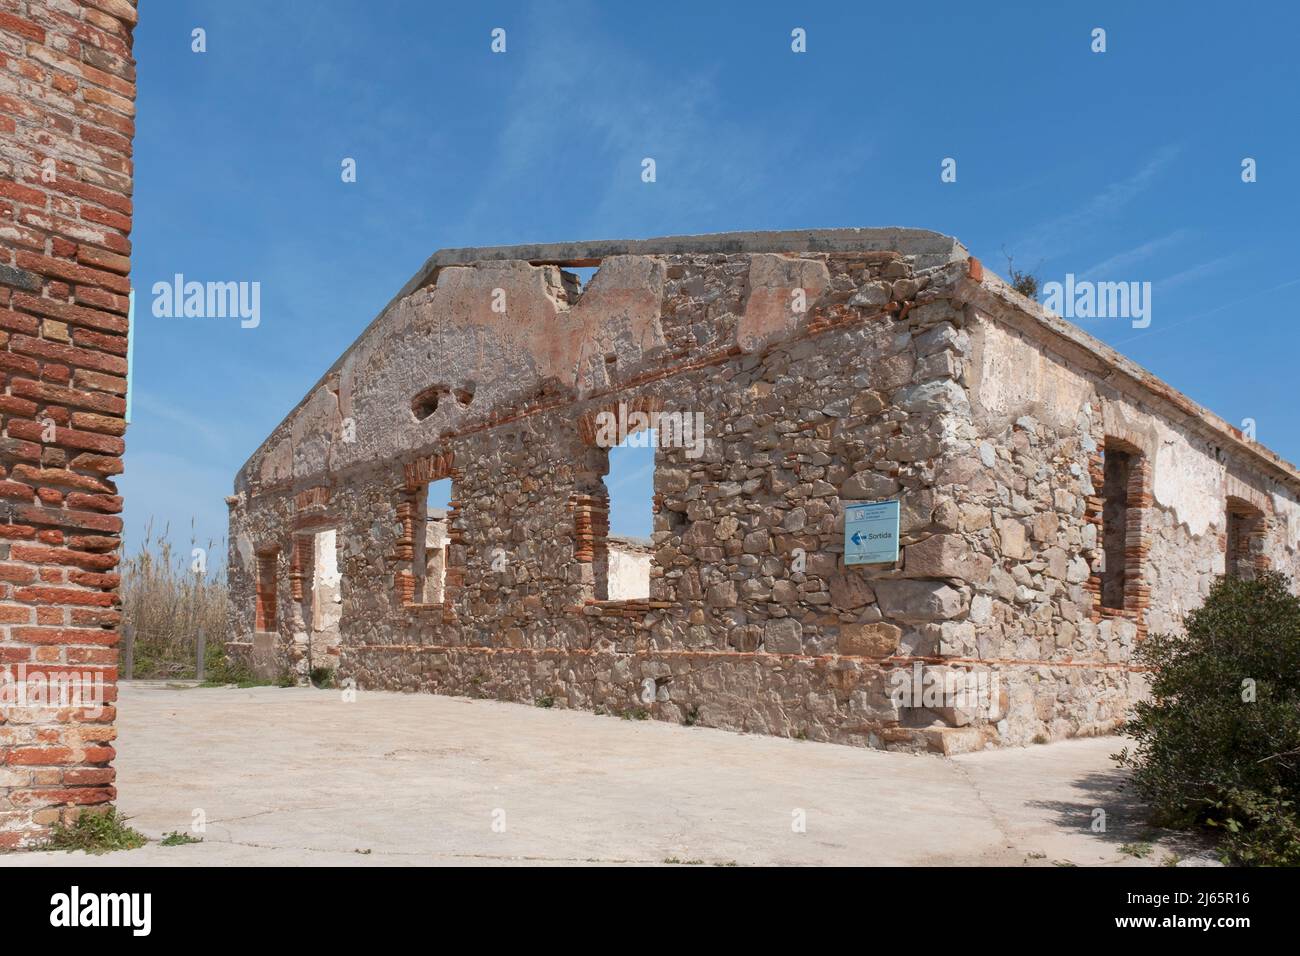 EL PRAT DE LLOBREGAT, APRIL 1st 2022: Remains of the old Carabiners Barracks in El Prat de Llobregat, Spain. Stock Photo